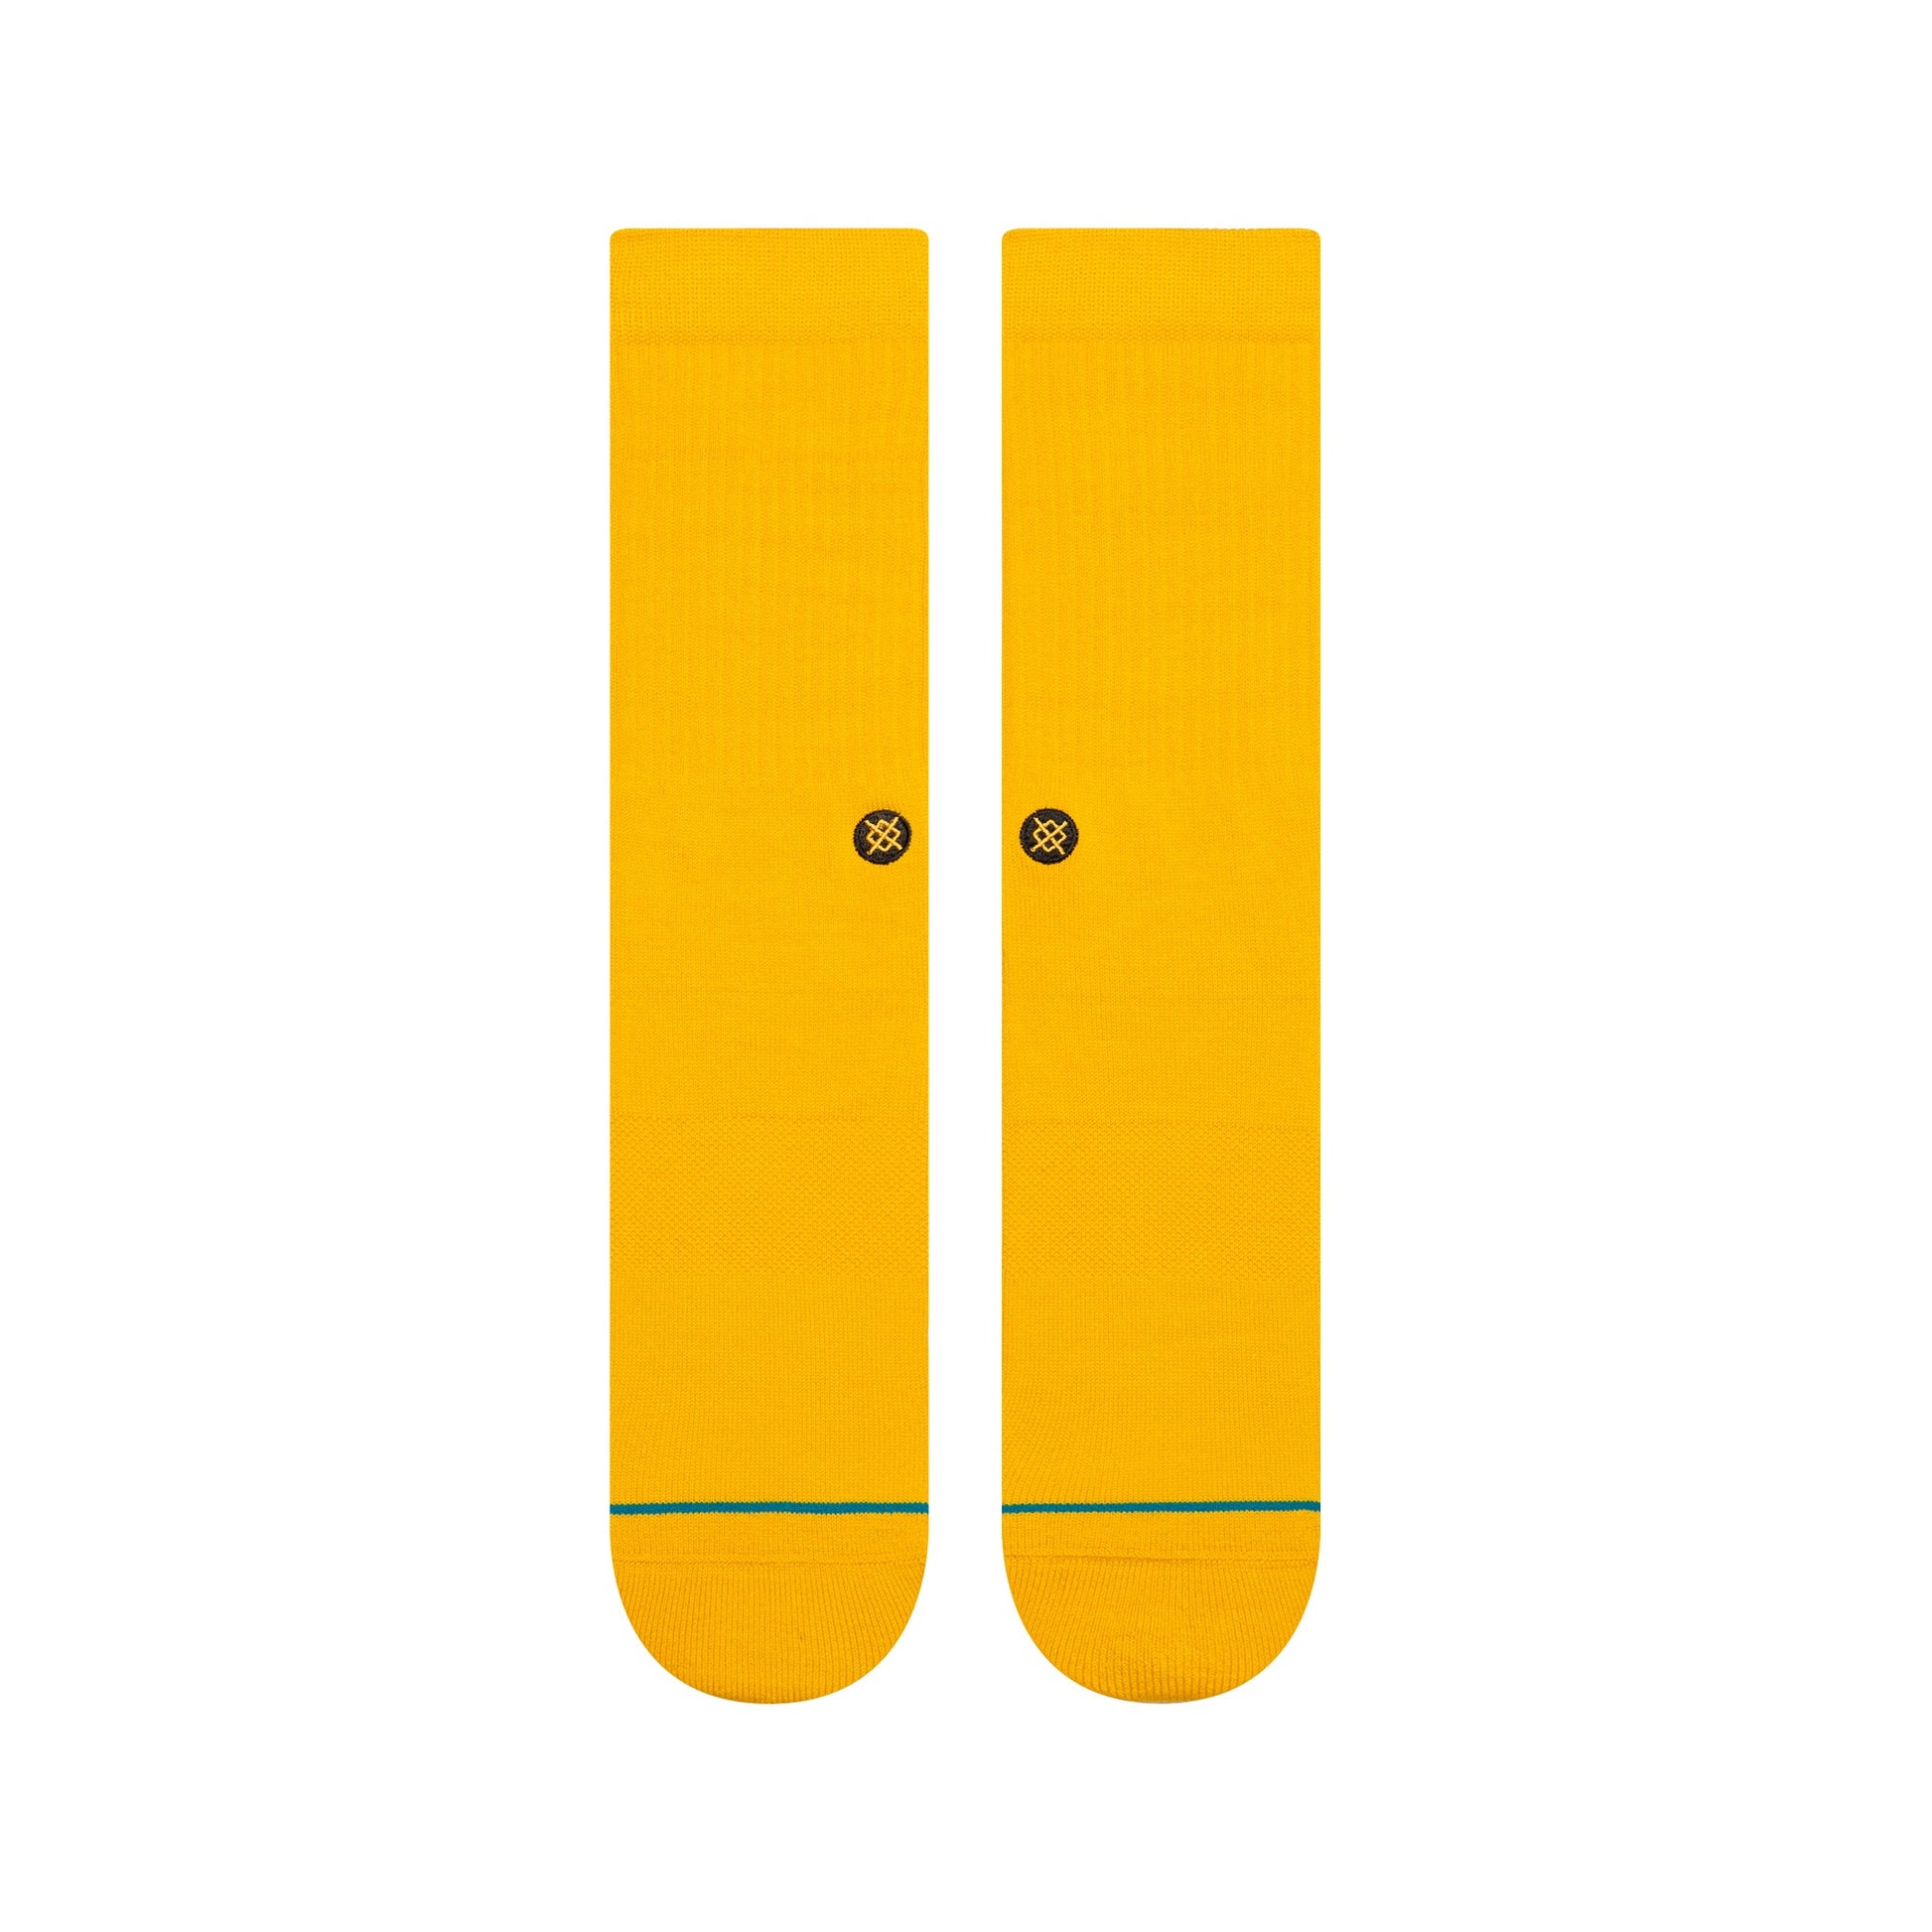 Chaussettes mi-mollet jaunes Icon de Stance